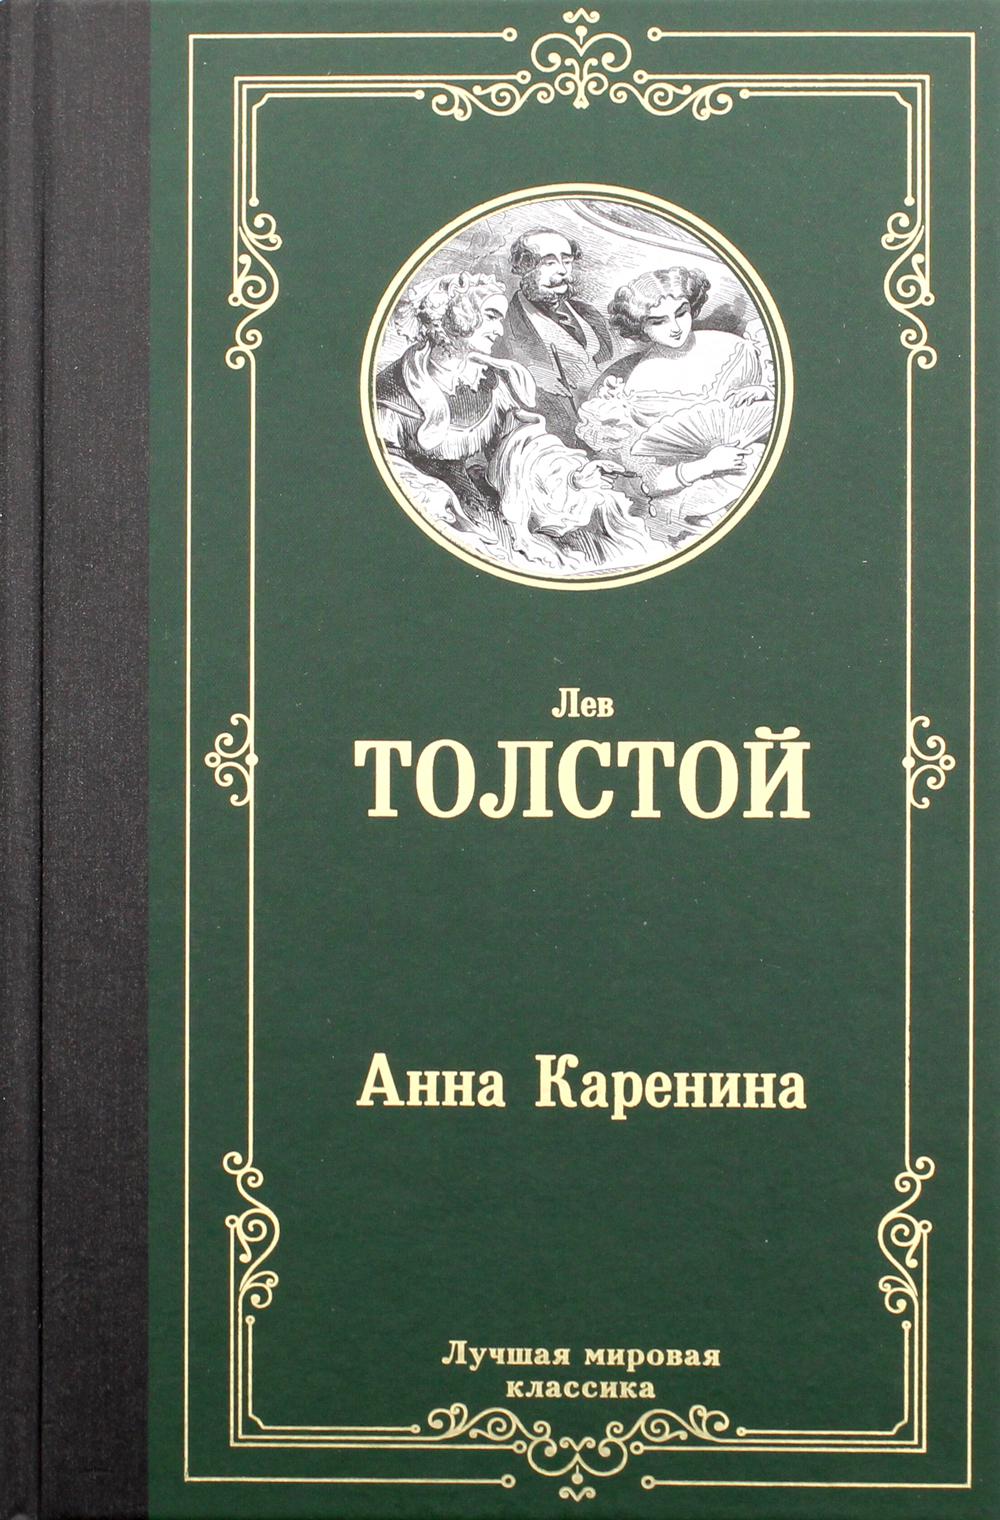 23 толстой отзывы. Стихотворение л н Толстого. Отзыв о книге Толстого.